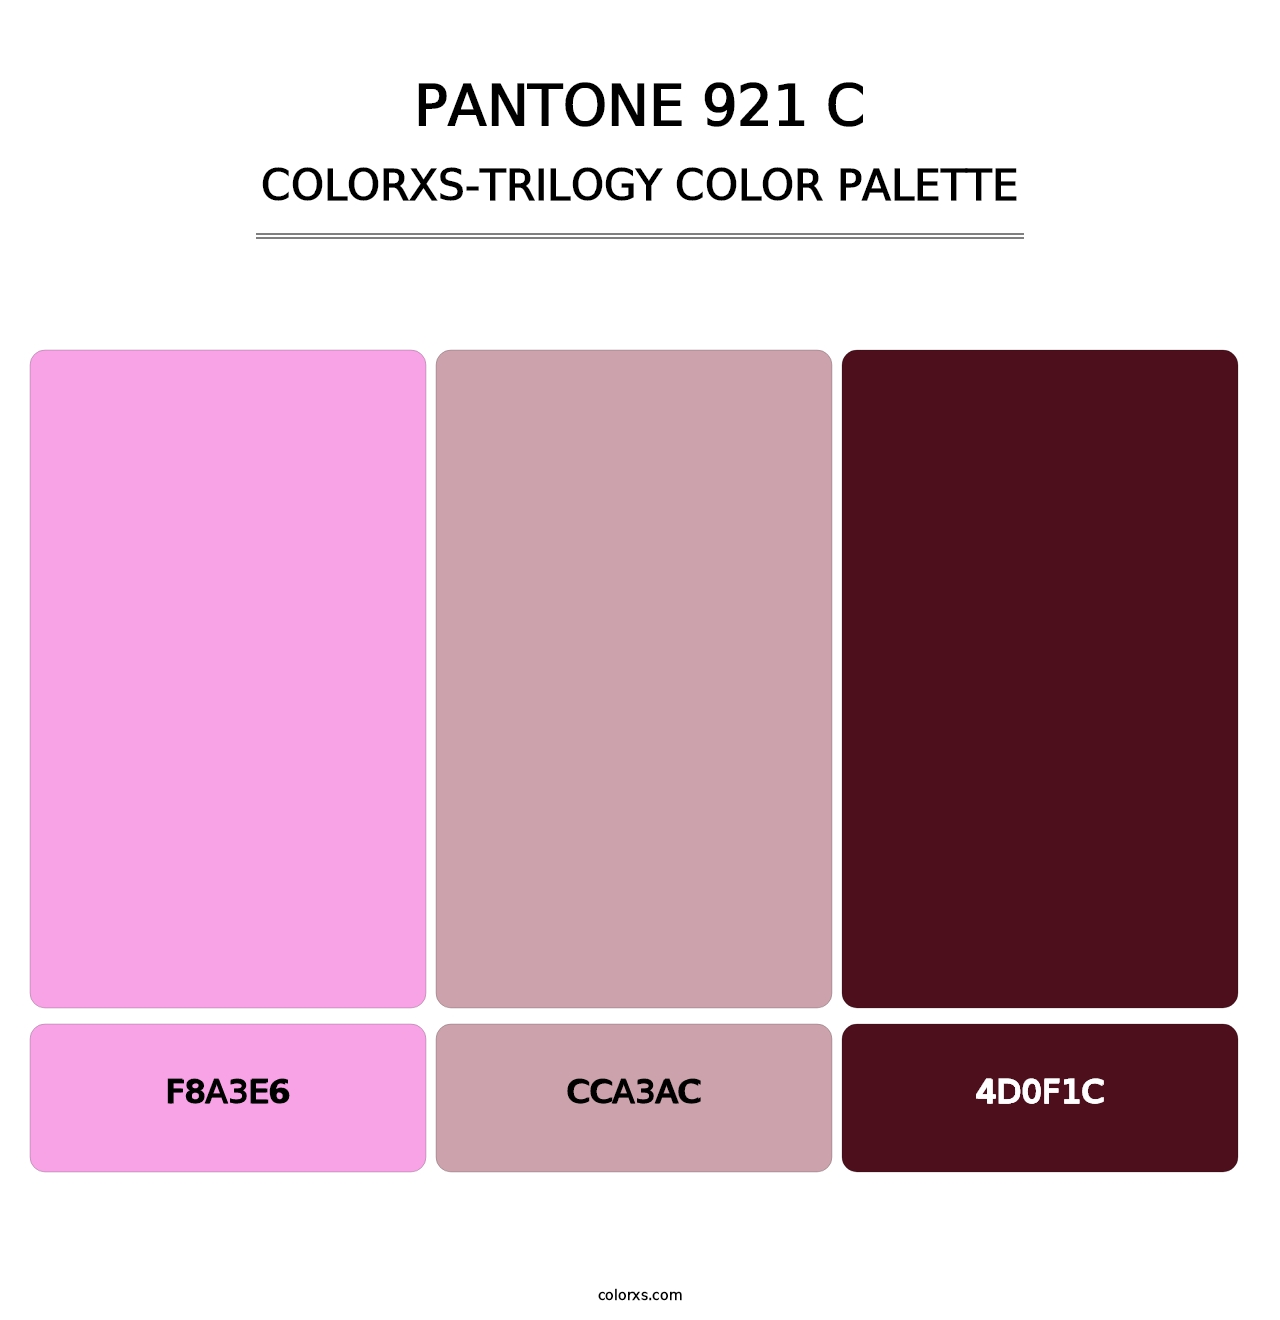 PANTONE 921 C - Colorxs Trilogy Palette